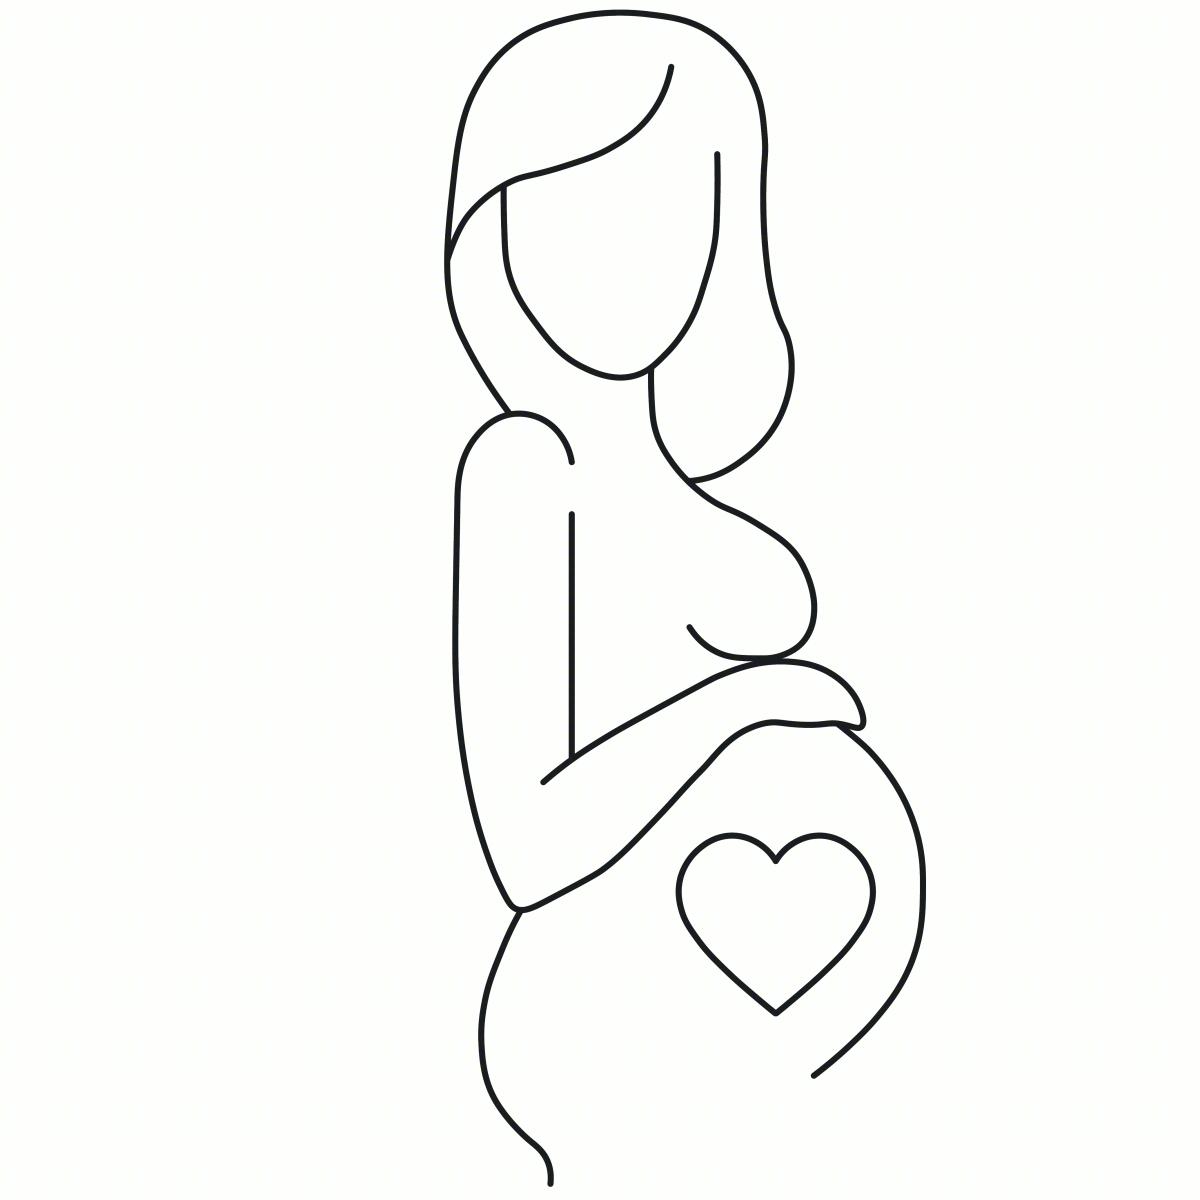 怀孕的女人 怀孕 - Pixabay上的免费照片 - Pixabay